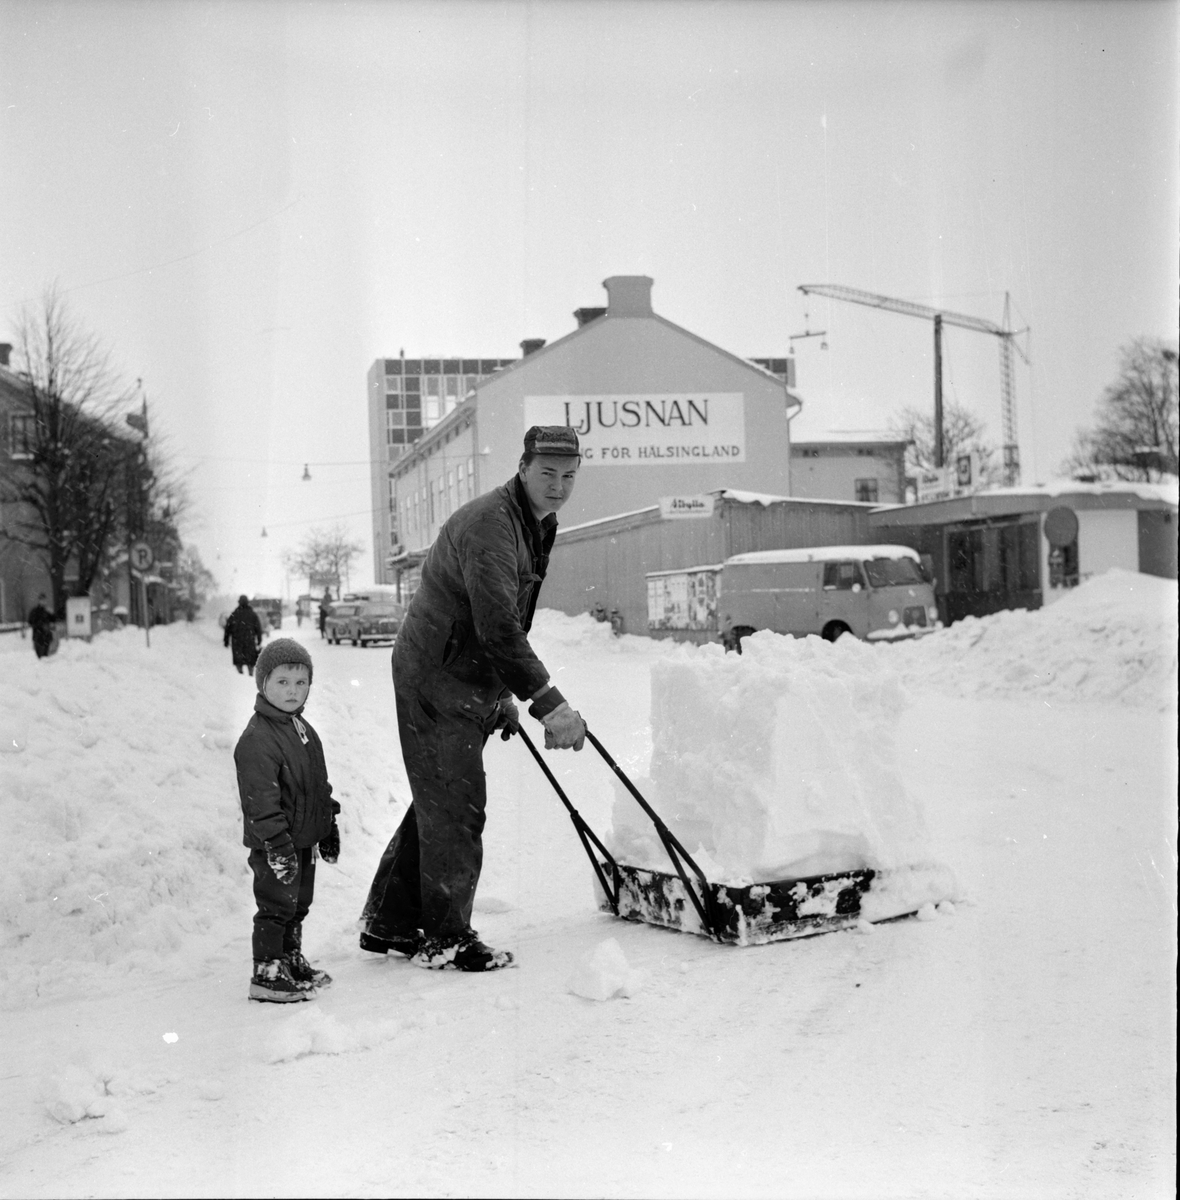 Snöskottning på Bollnäs bangård.
29/3-1966